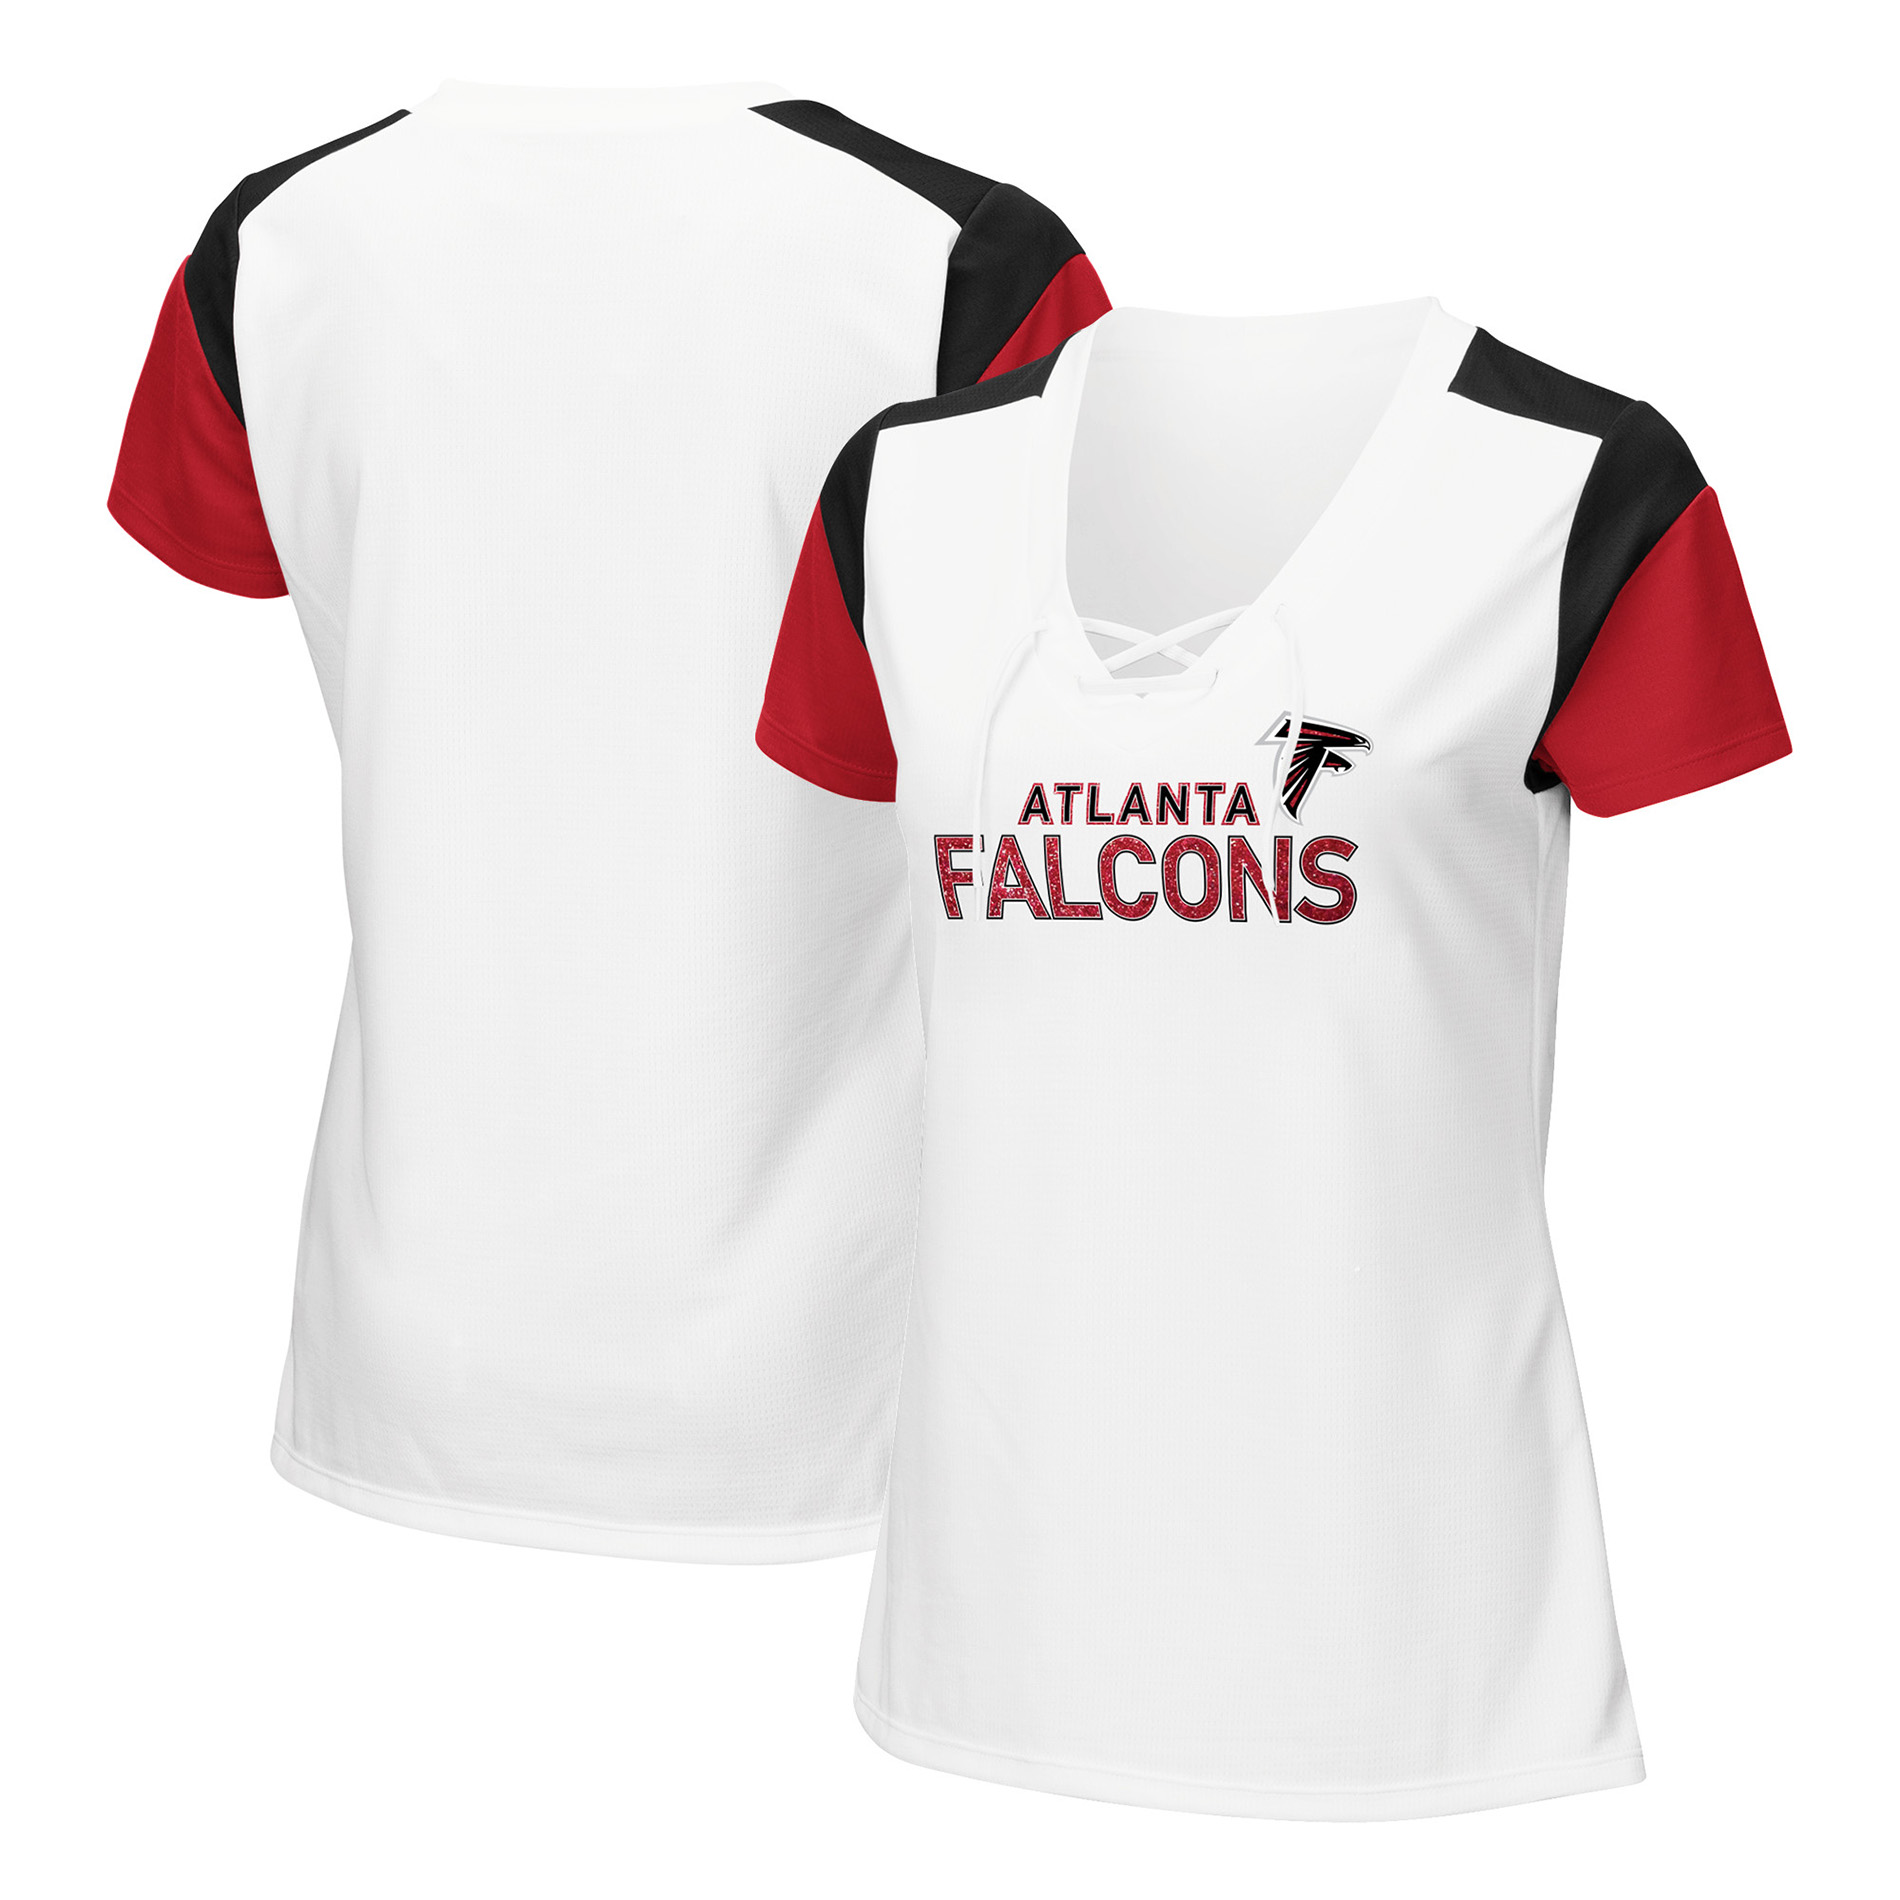 Atlanta Falcons Apparel - Kmart